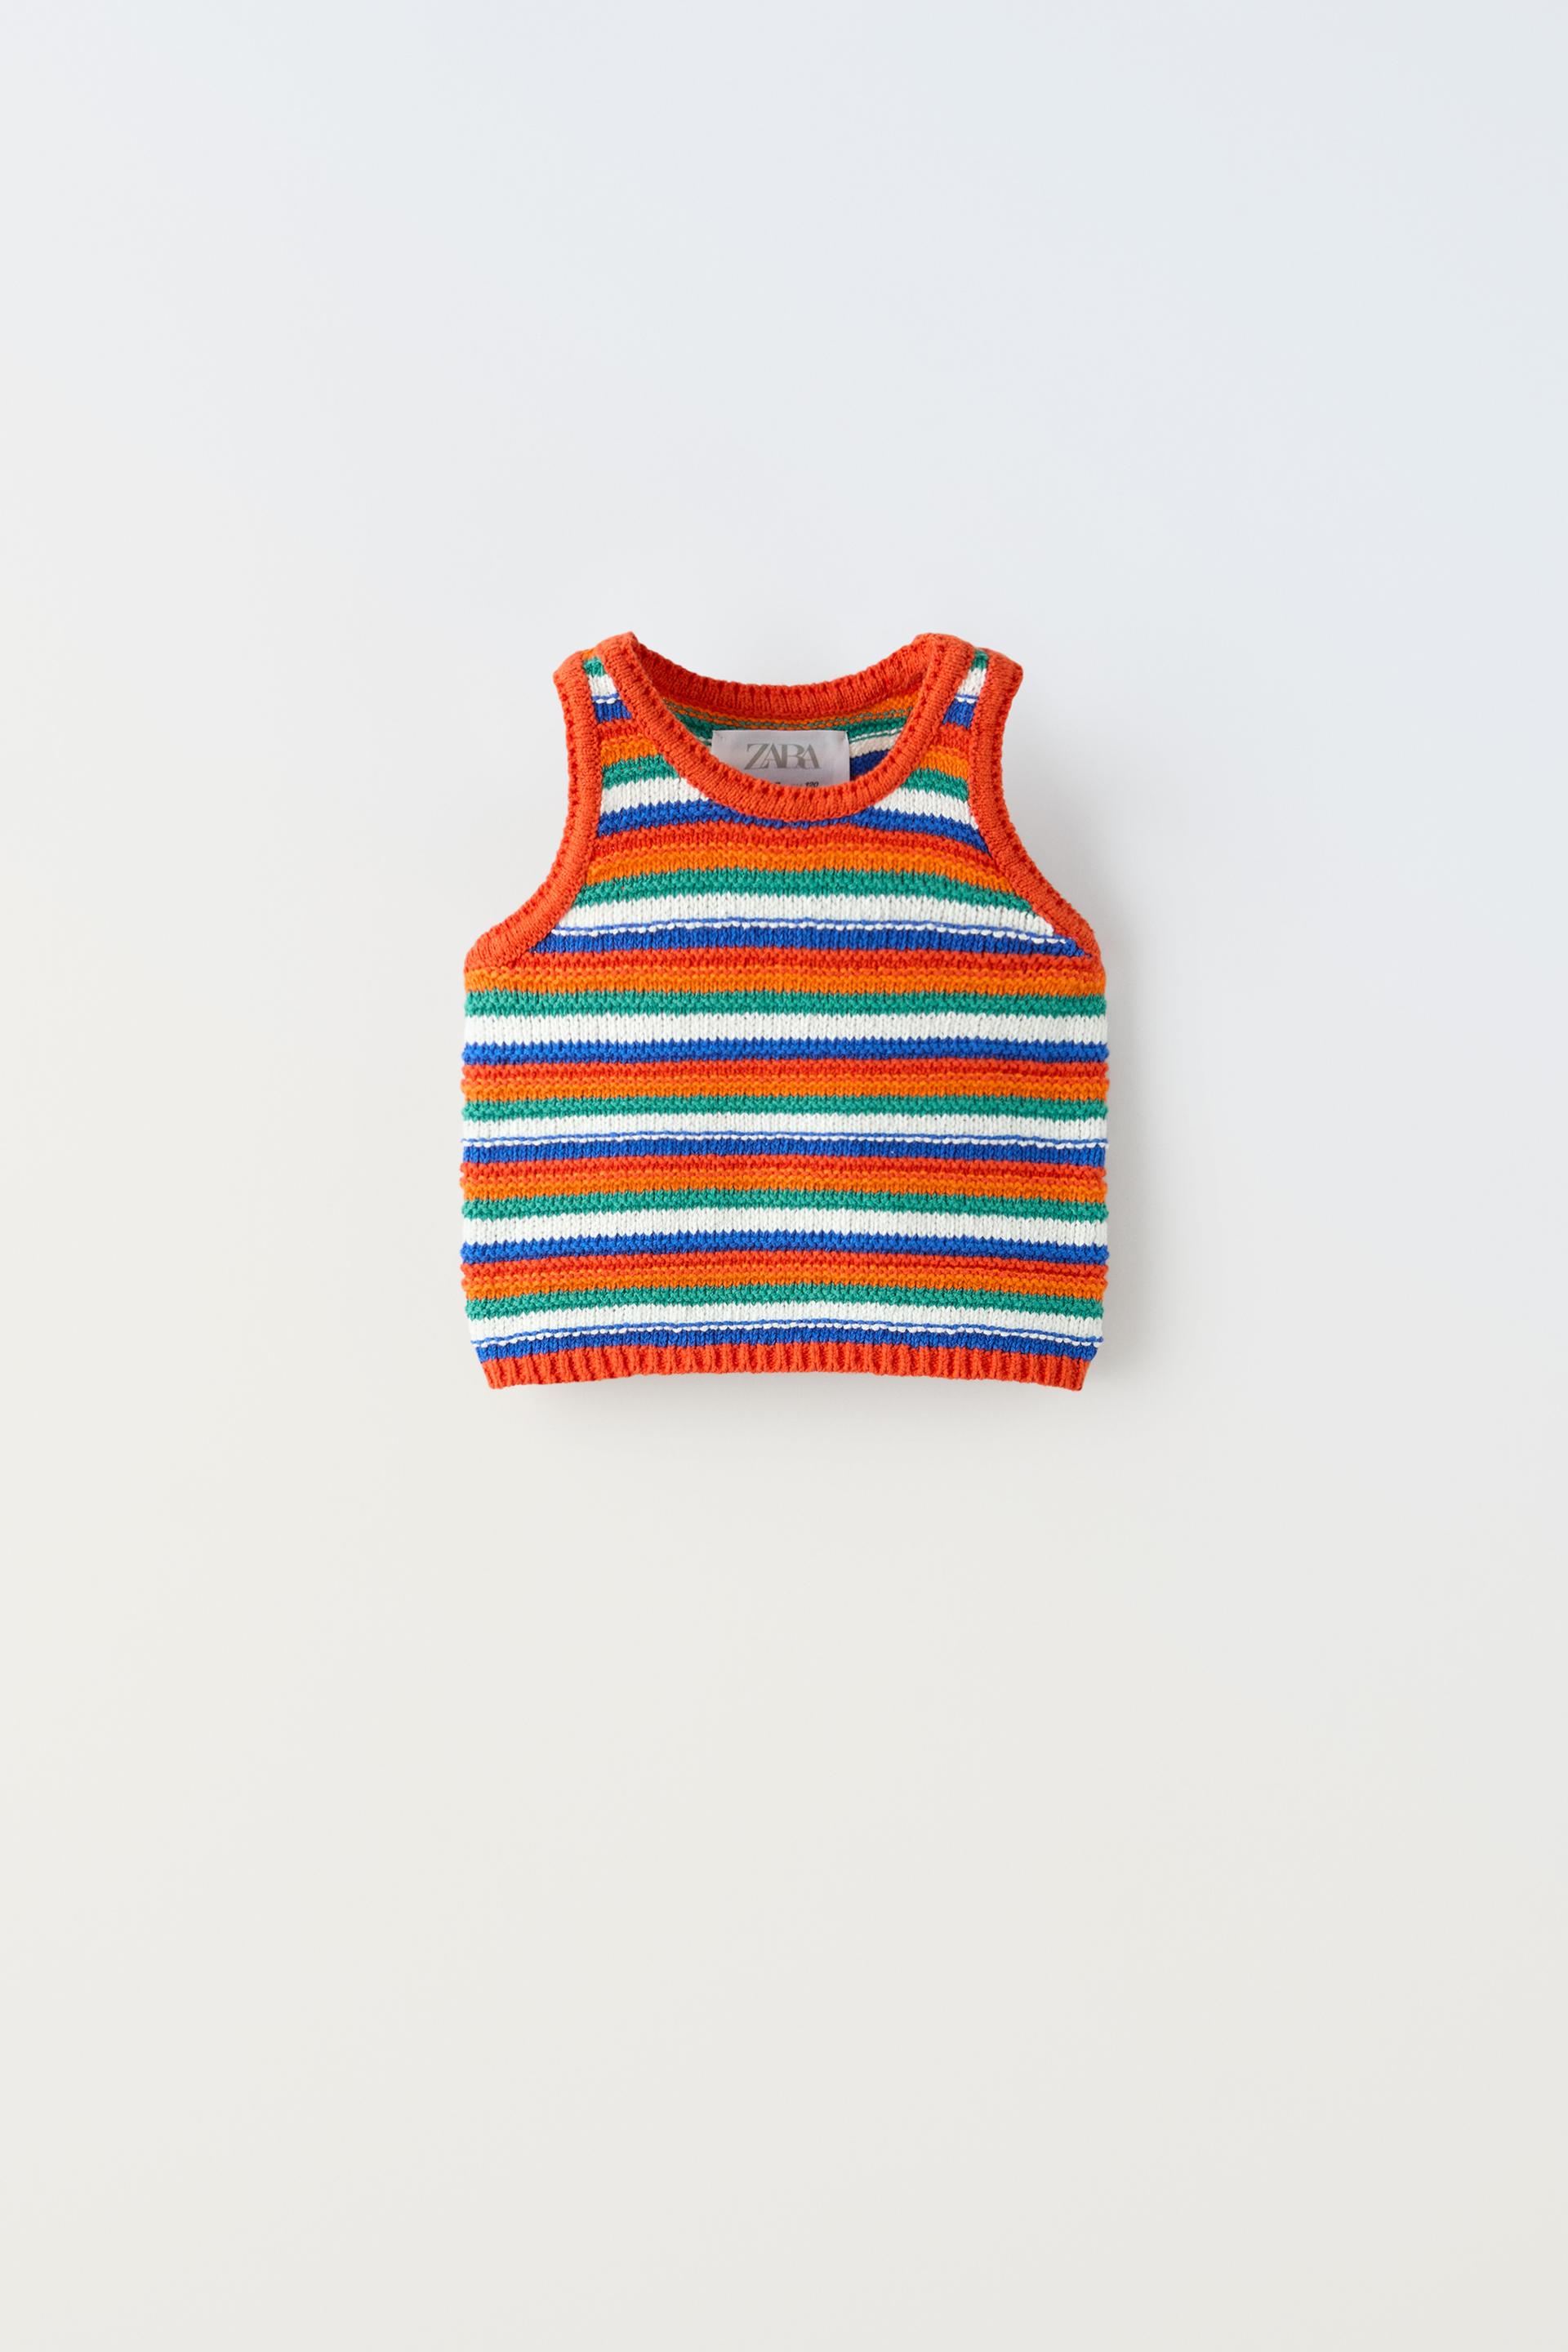 Топ Zara Striped Knit, разноцветный топ zara striped knit светло бежевый